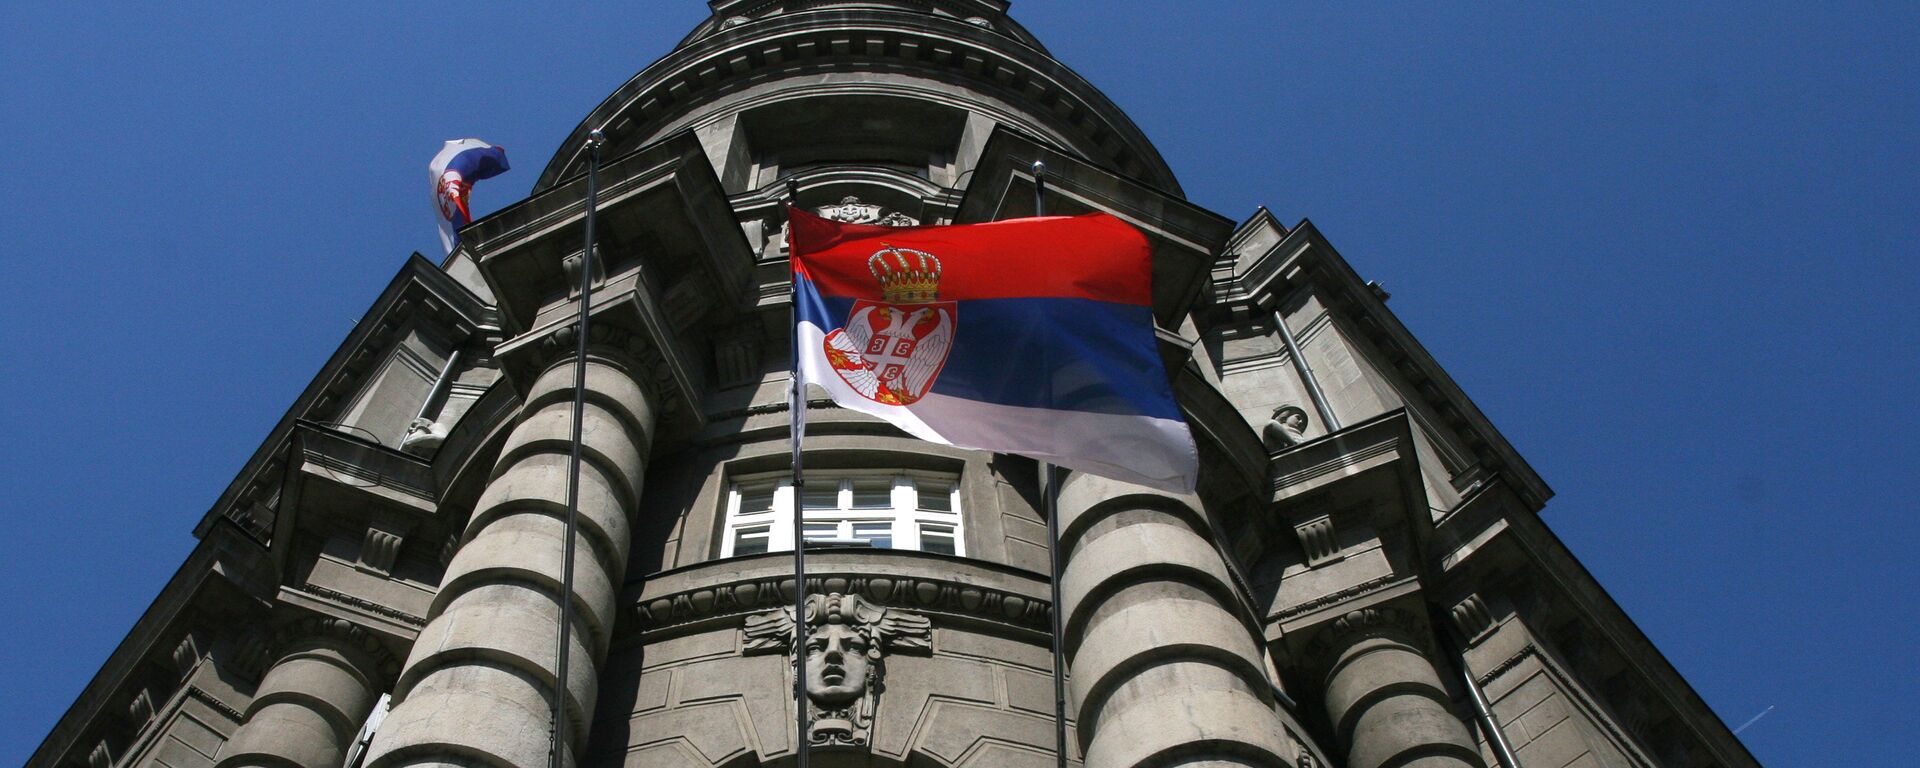 Vlada Republike Srbije - Sputnik Srbija, 1920, 23.07.2021